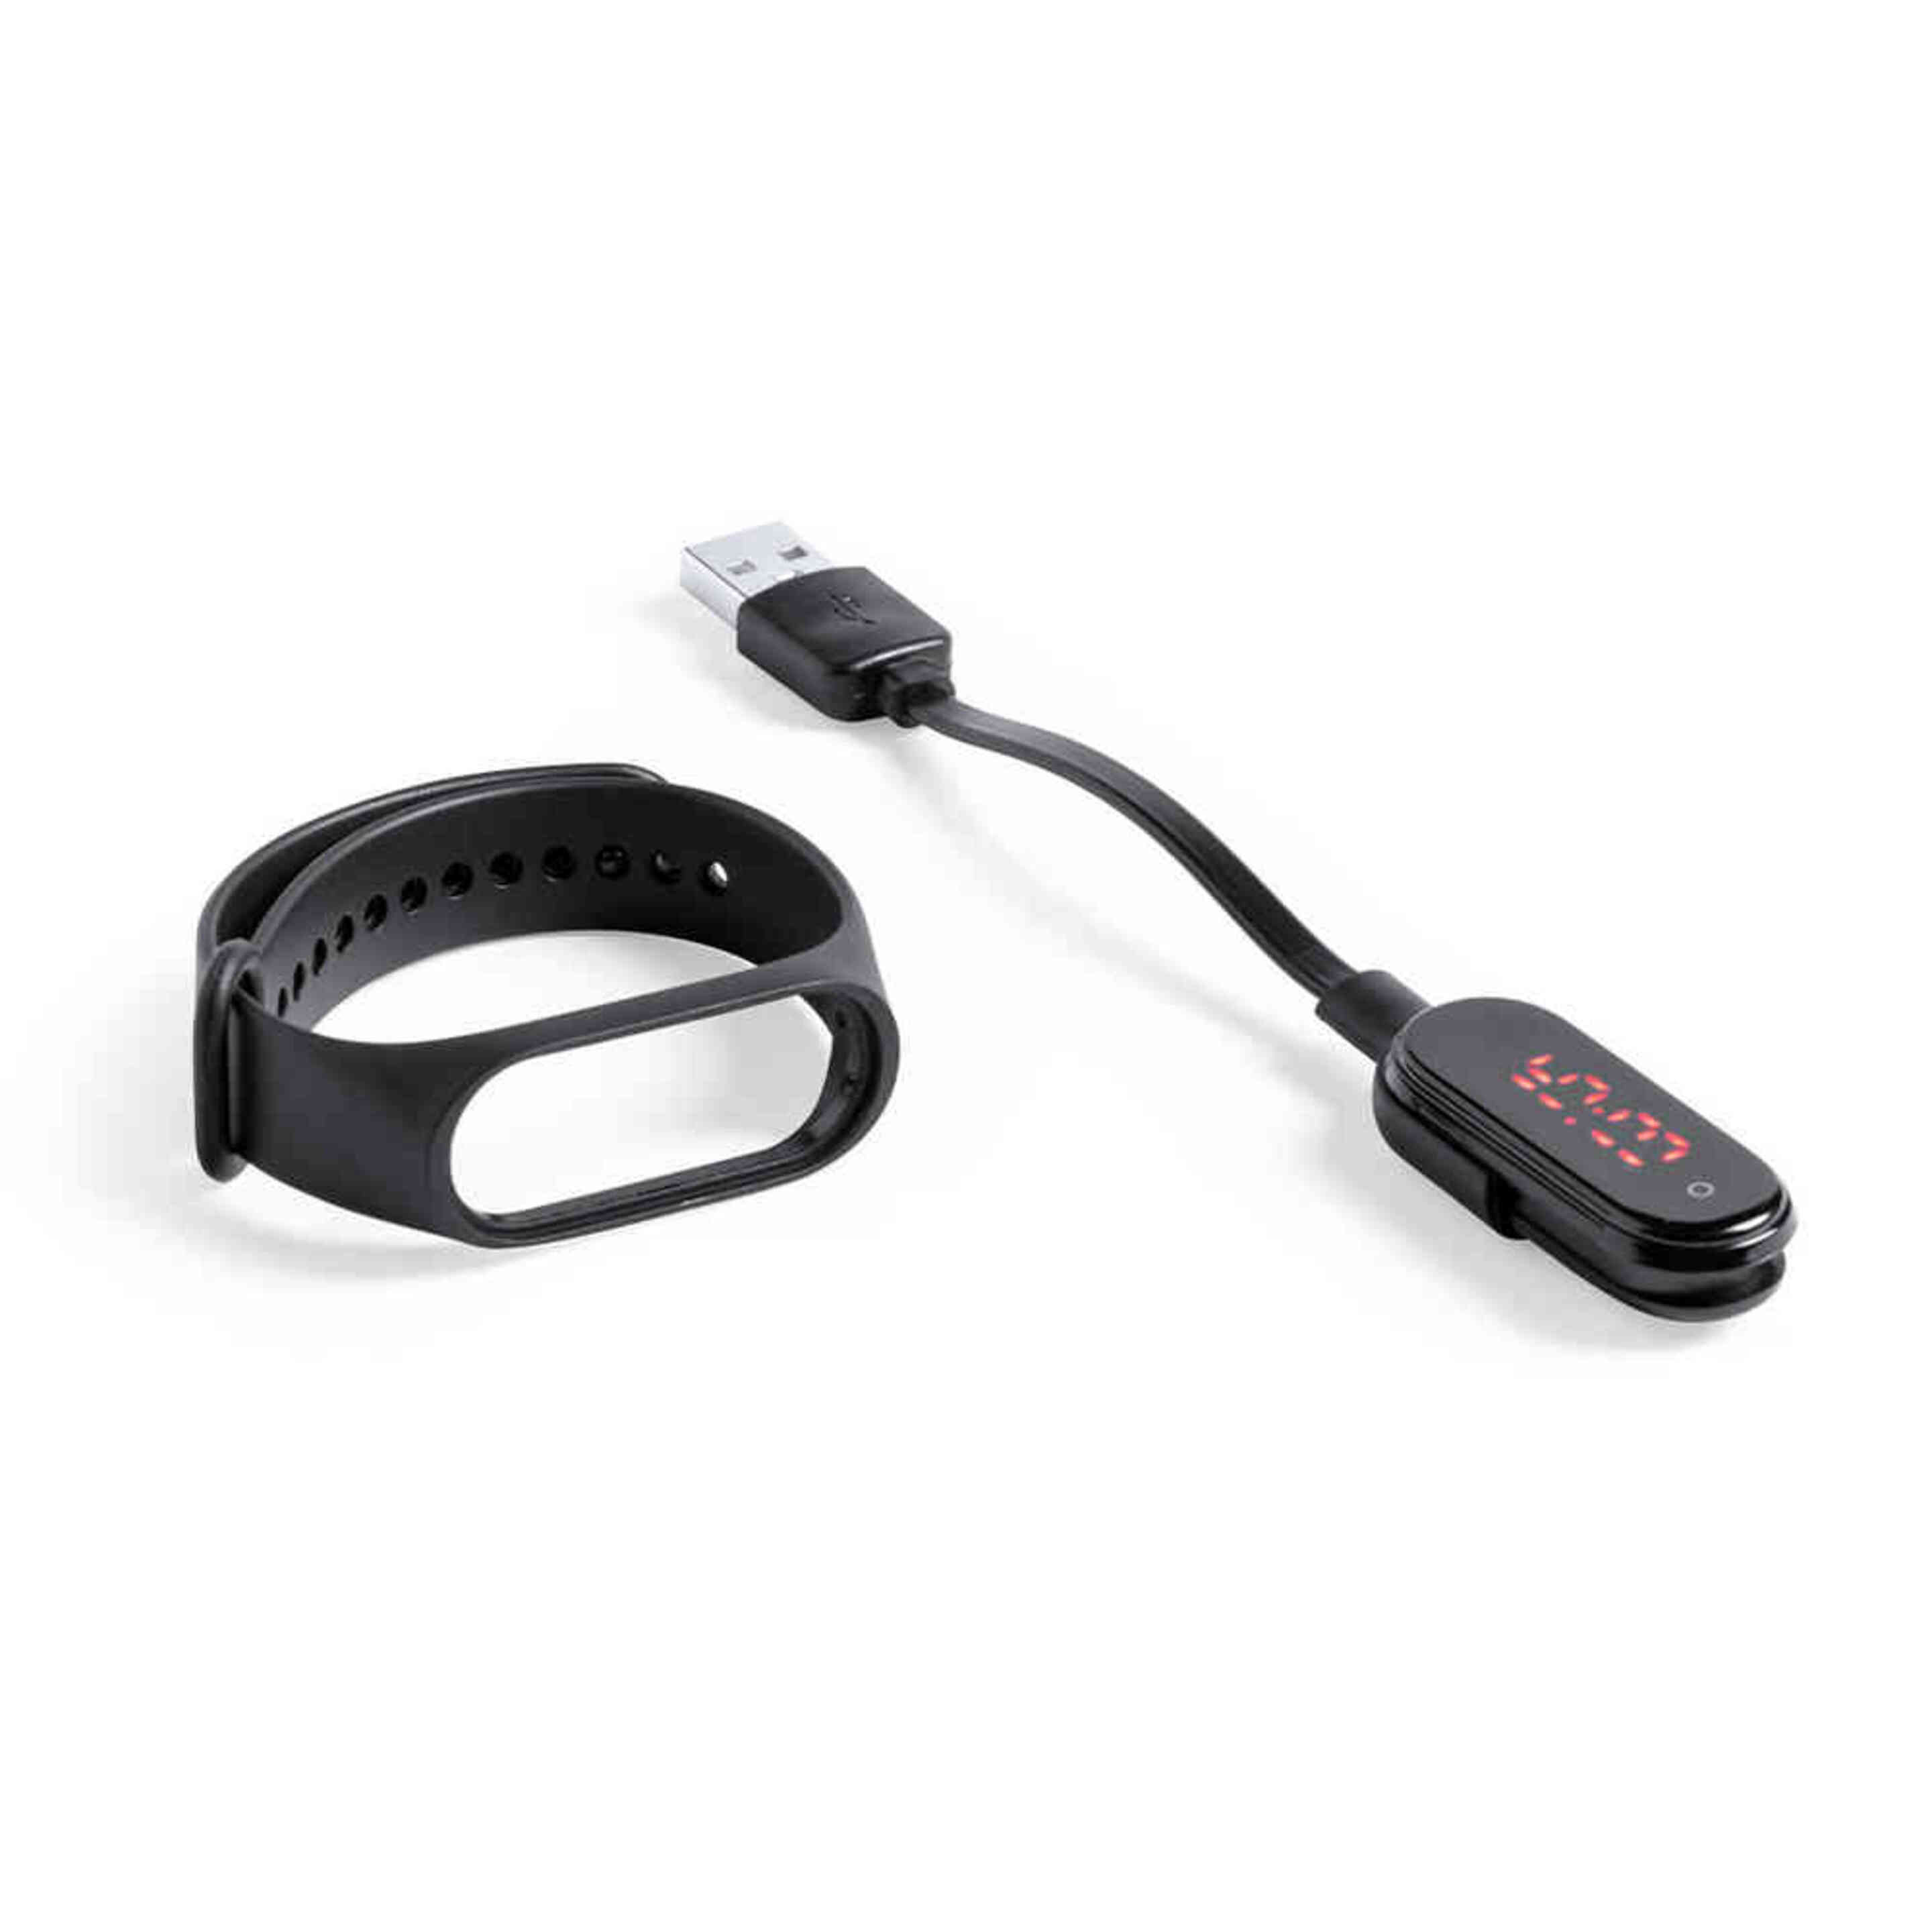 Smartband Con Función Termometro Color Negro - Negro - Smartband  MKP